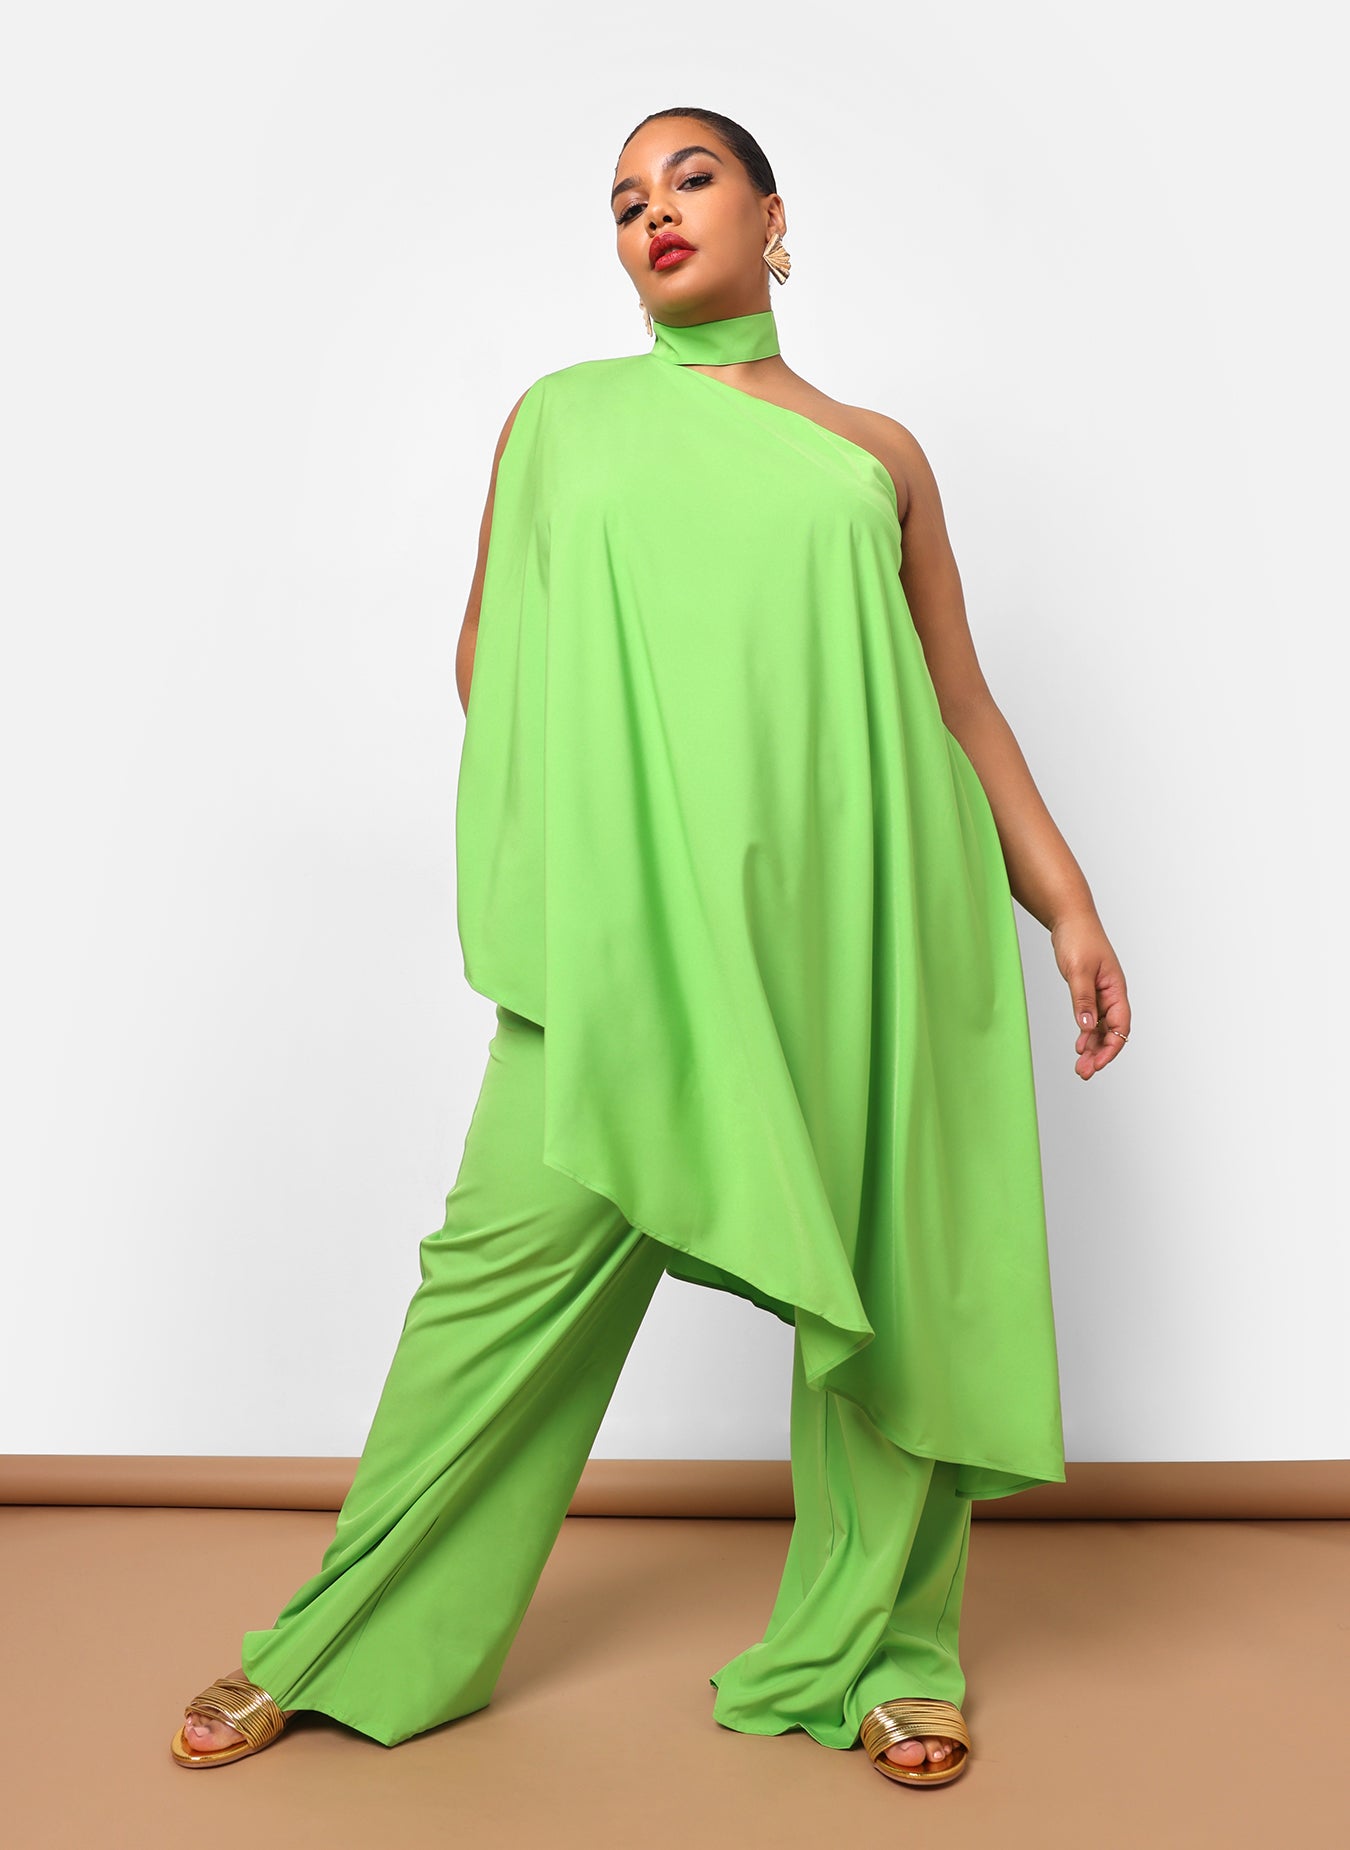 Sedona Halter Asymmetrical Longline Top - Neon Green